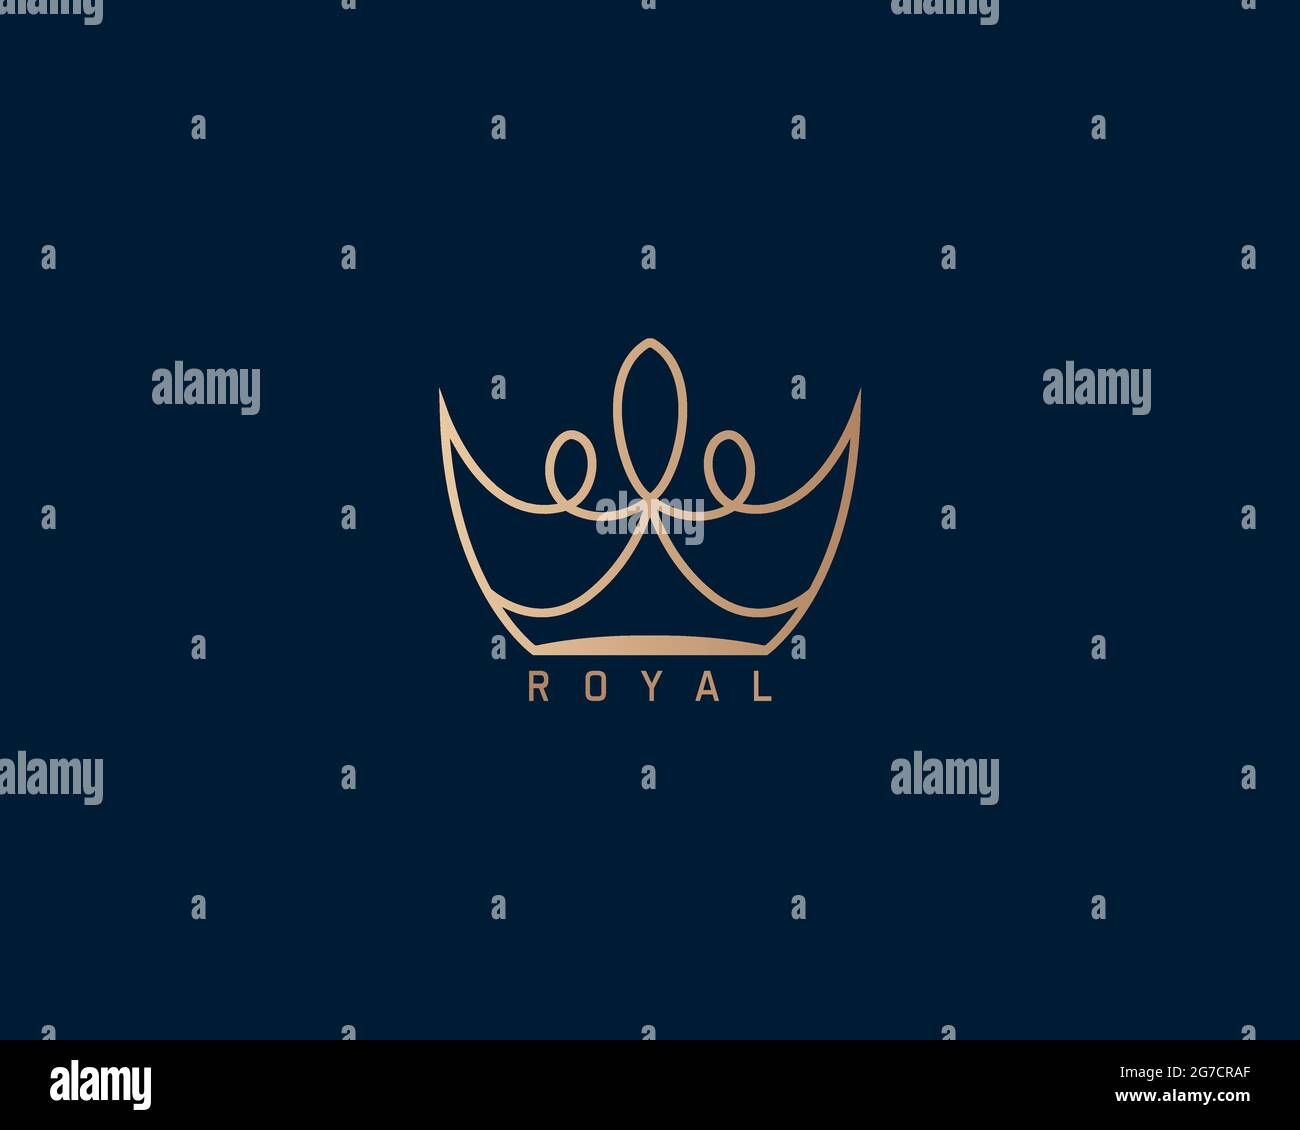 il logo crown royal golden può essere utilizzato come segno, icona o simbolo, vettore a strati completi e facile da modificare e personalizzare dimensioni e colori, compatibile con Illustrazione Vettoriale